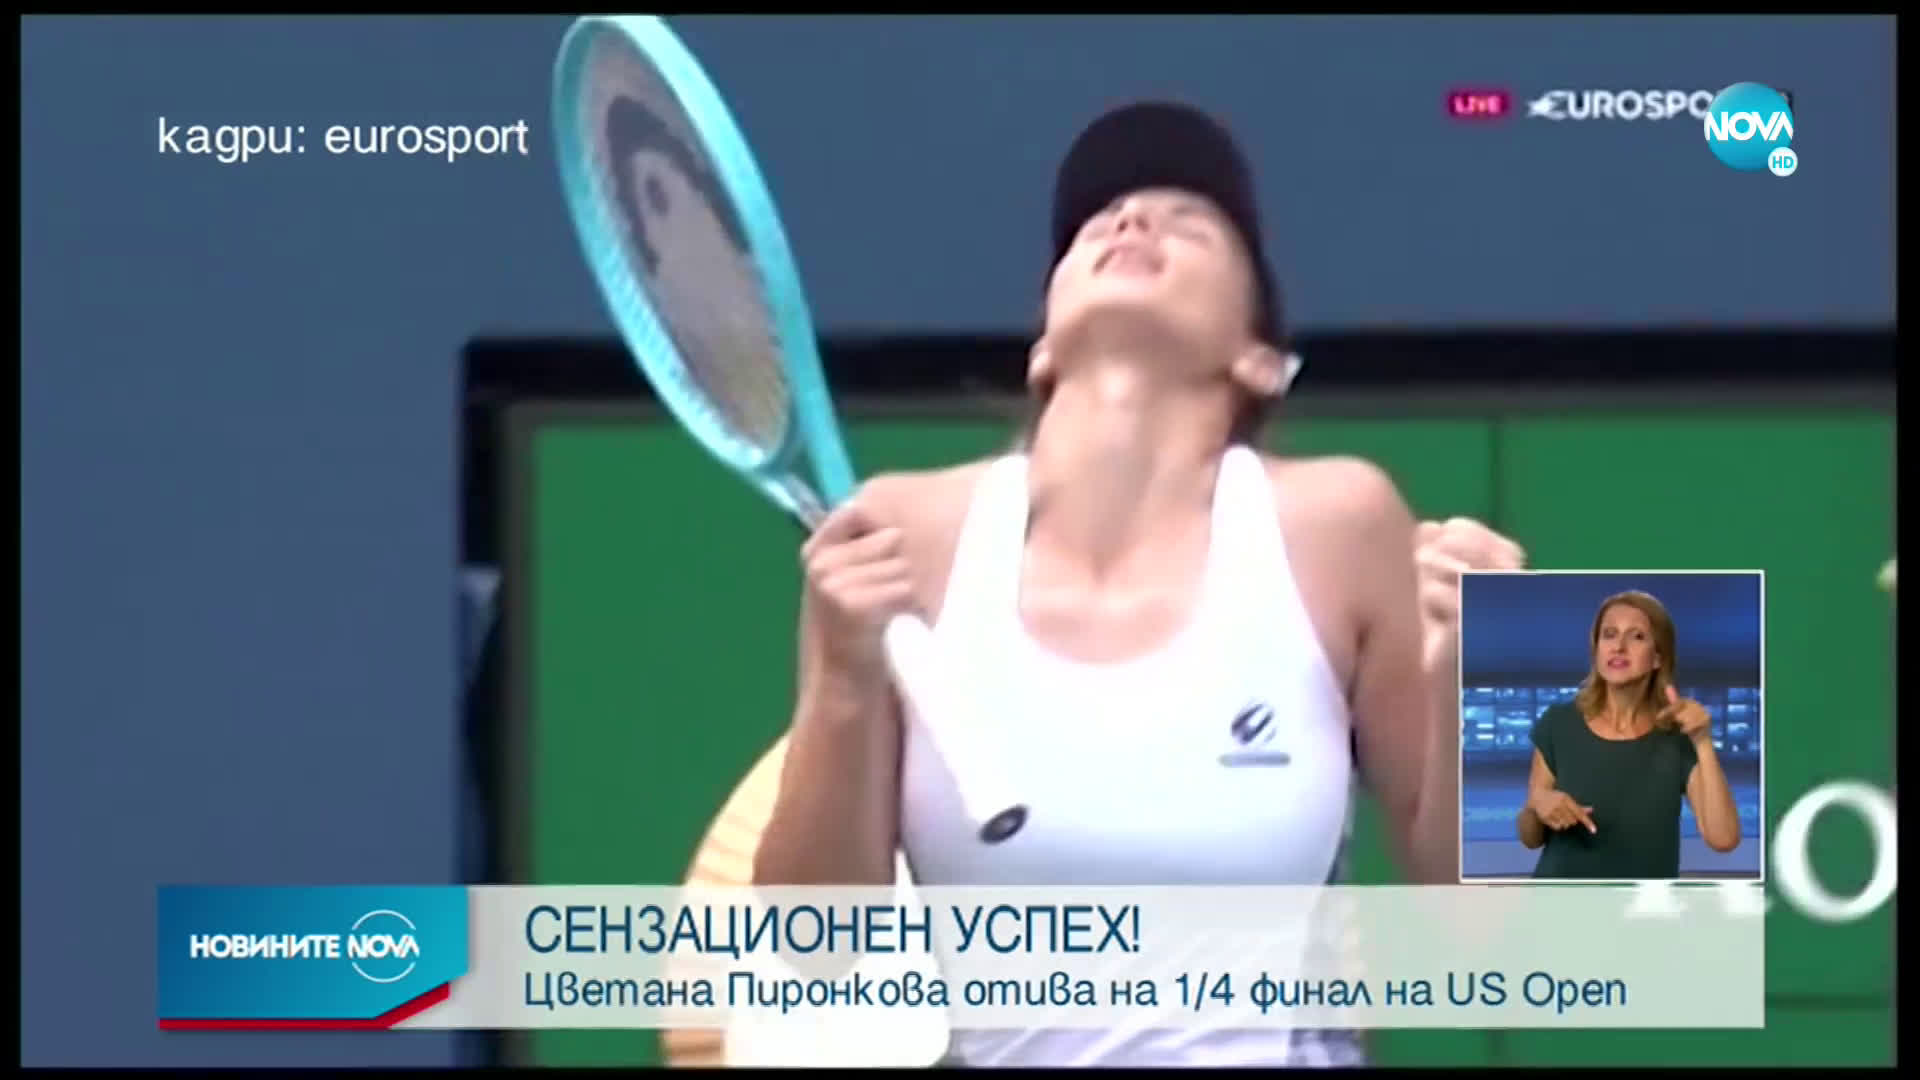 СЕНЗАЦИОНЕН УСПЕХ: Цвети Пиронкова среща Серина Уилямс на 1/4 финал на US Open